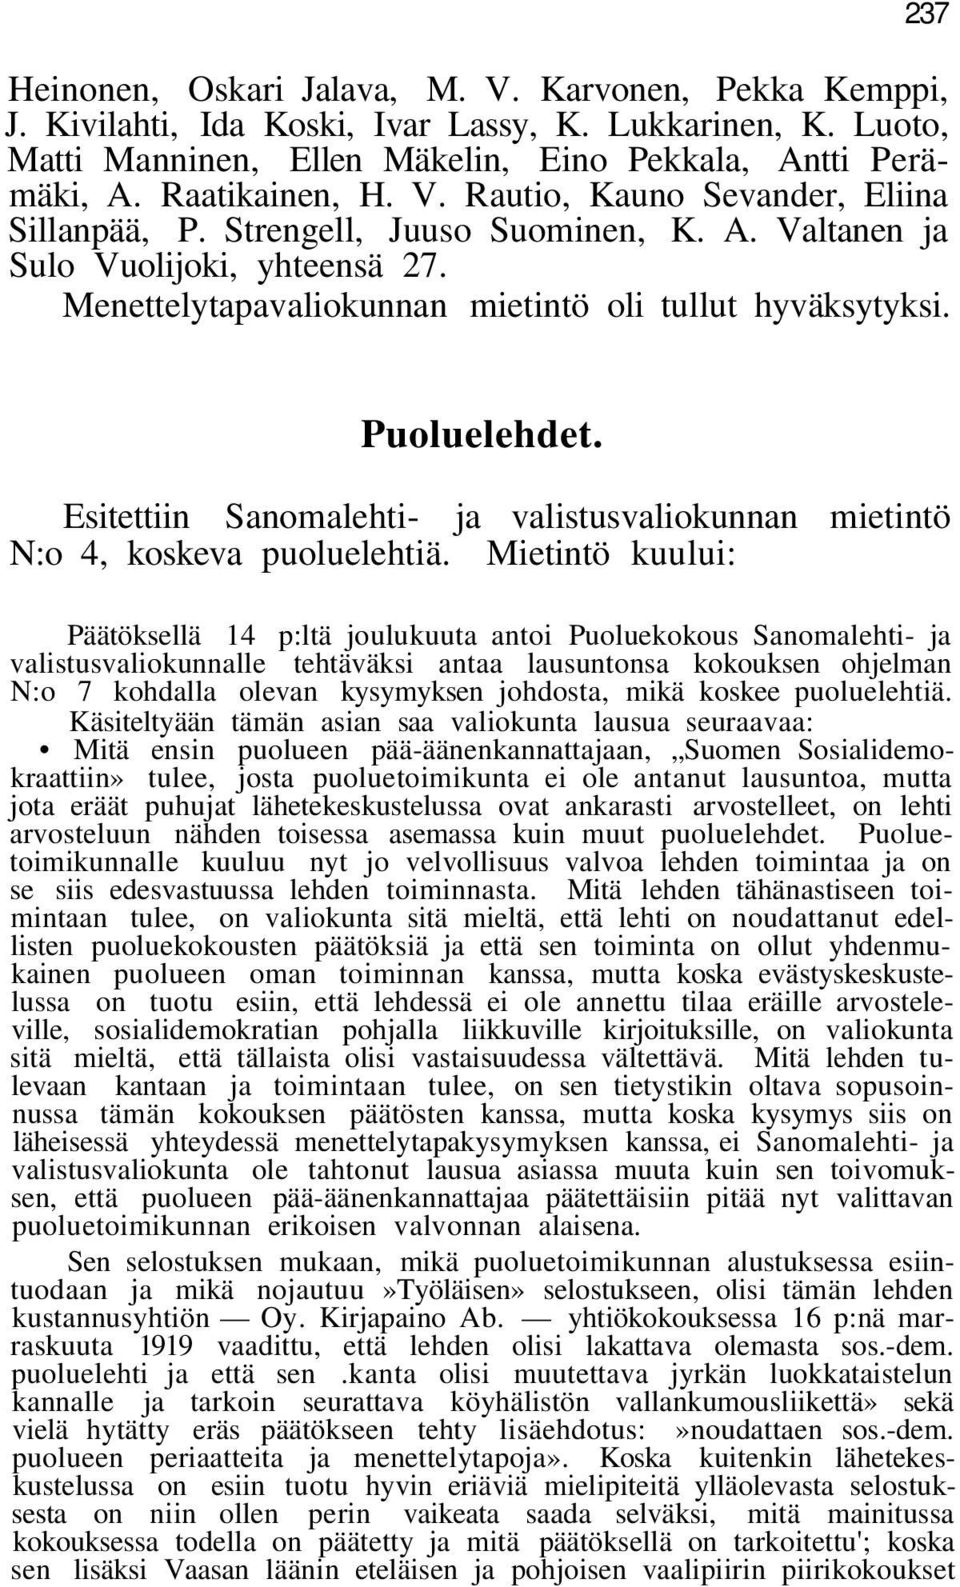 Esitettiin Sanomalehti- ja valistusvaliokunnan mietintö N:o 4, koskeva puoluelehtiä.